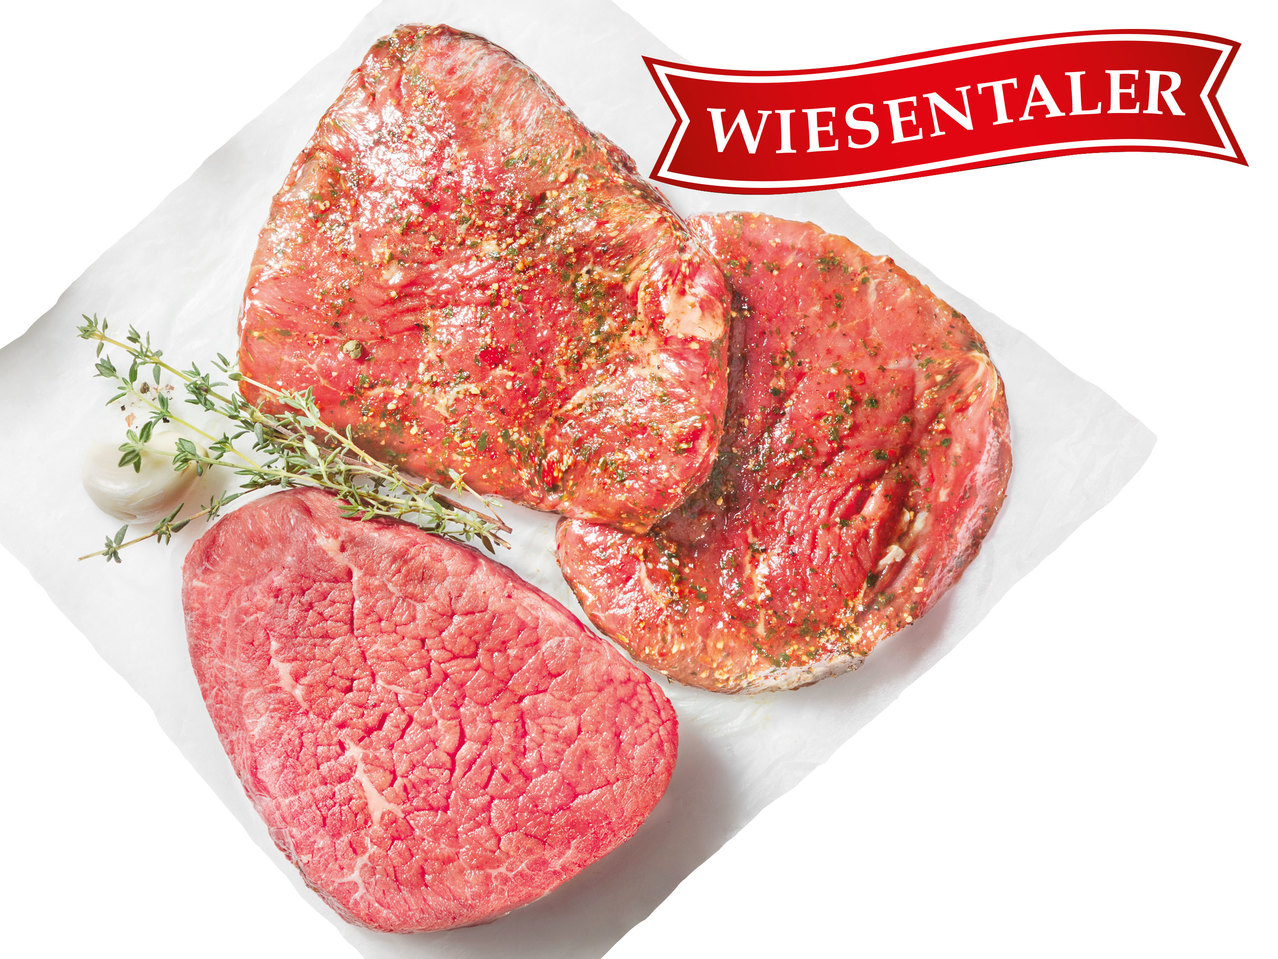 WIESENTALER Österreichische Hüftsteaks mariniert oder Eye-of-round-Steaks